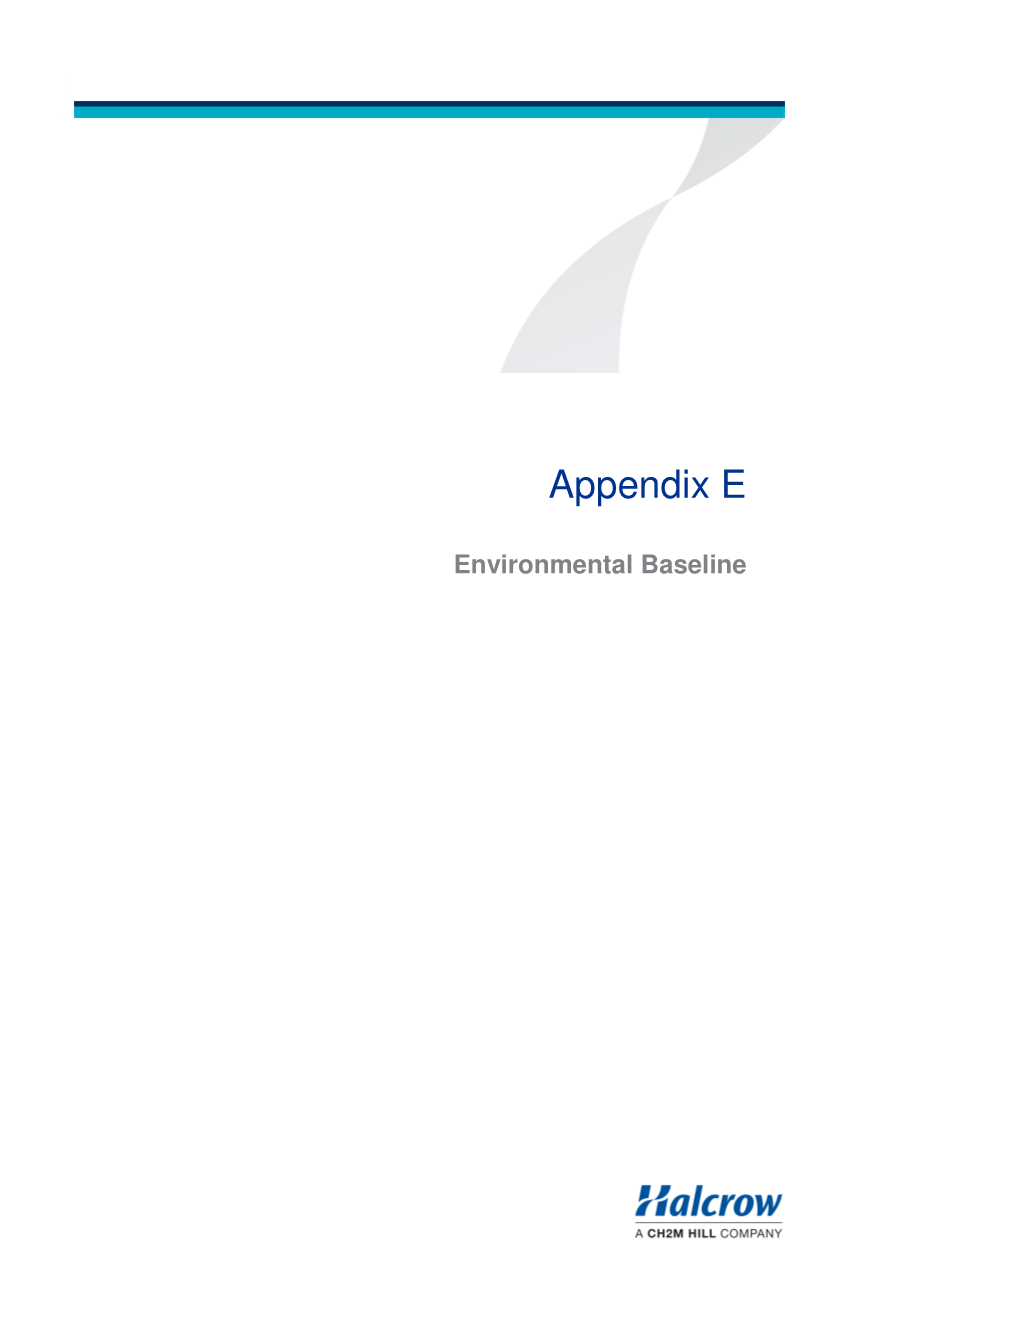 Appendix a Appendix E